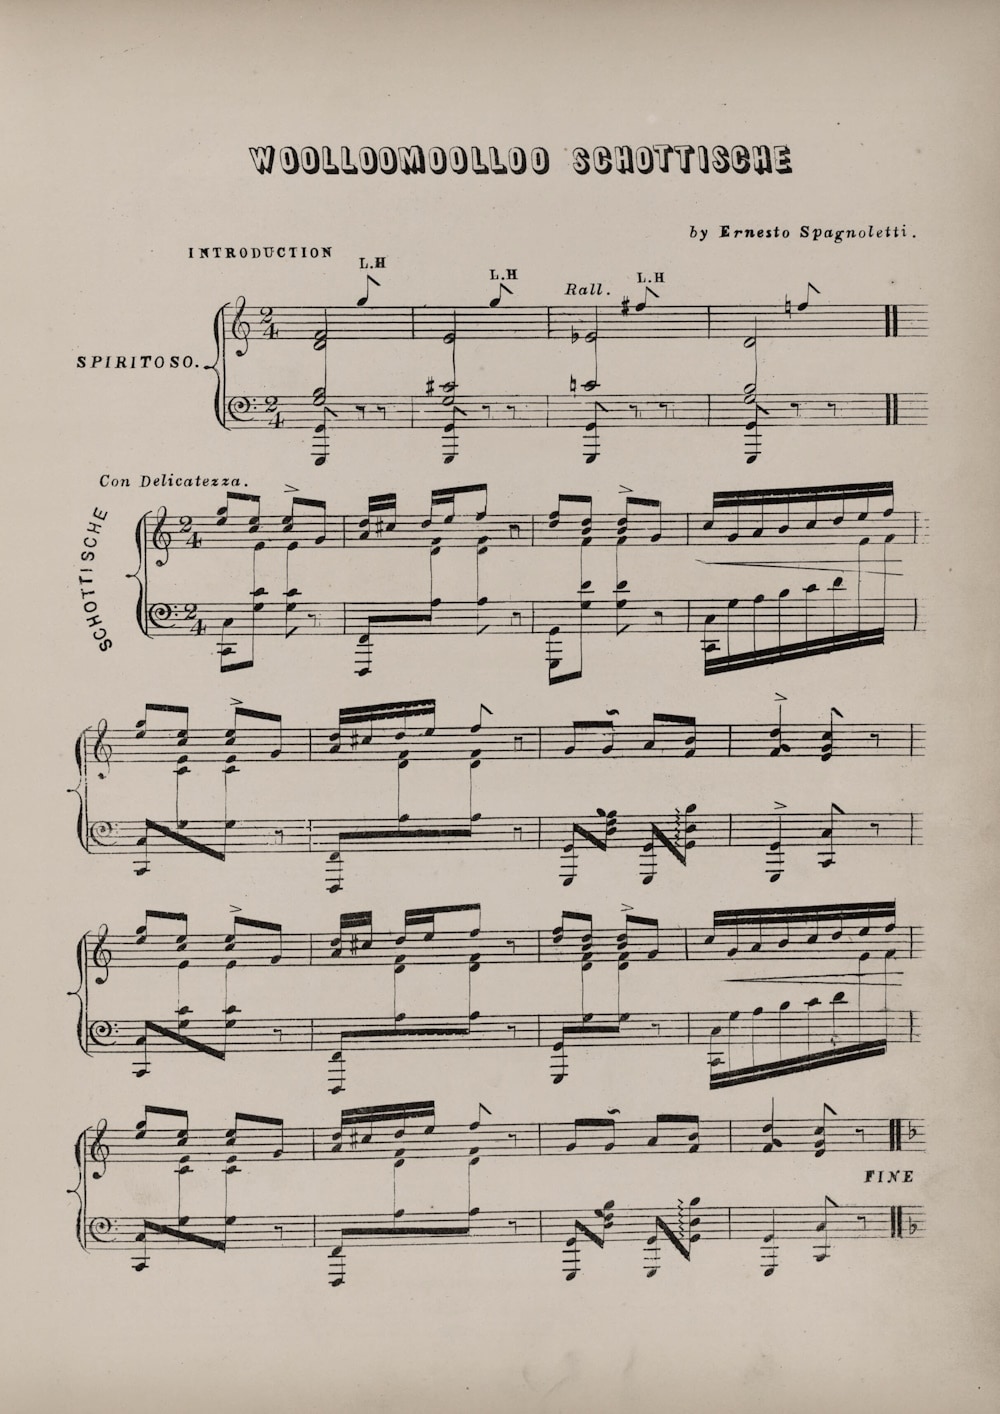 Degotardi, Woolloomooloo schottische, 1858